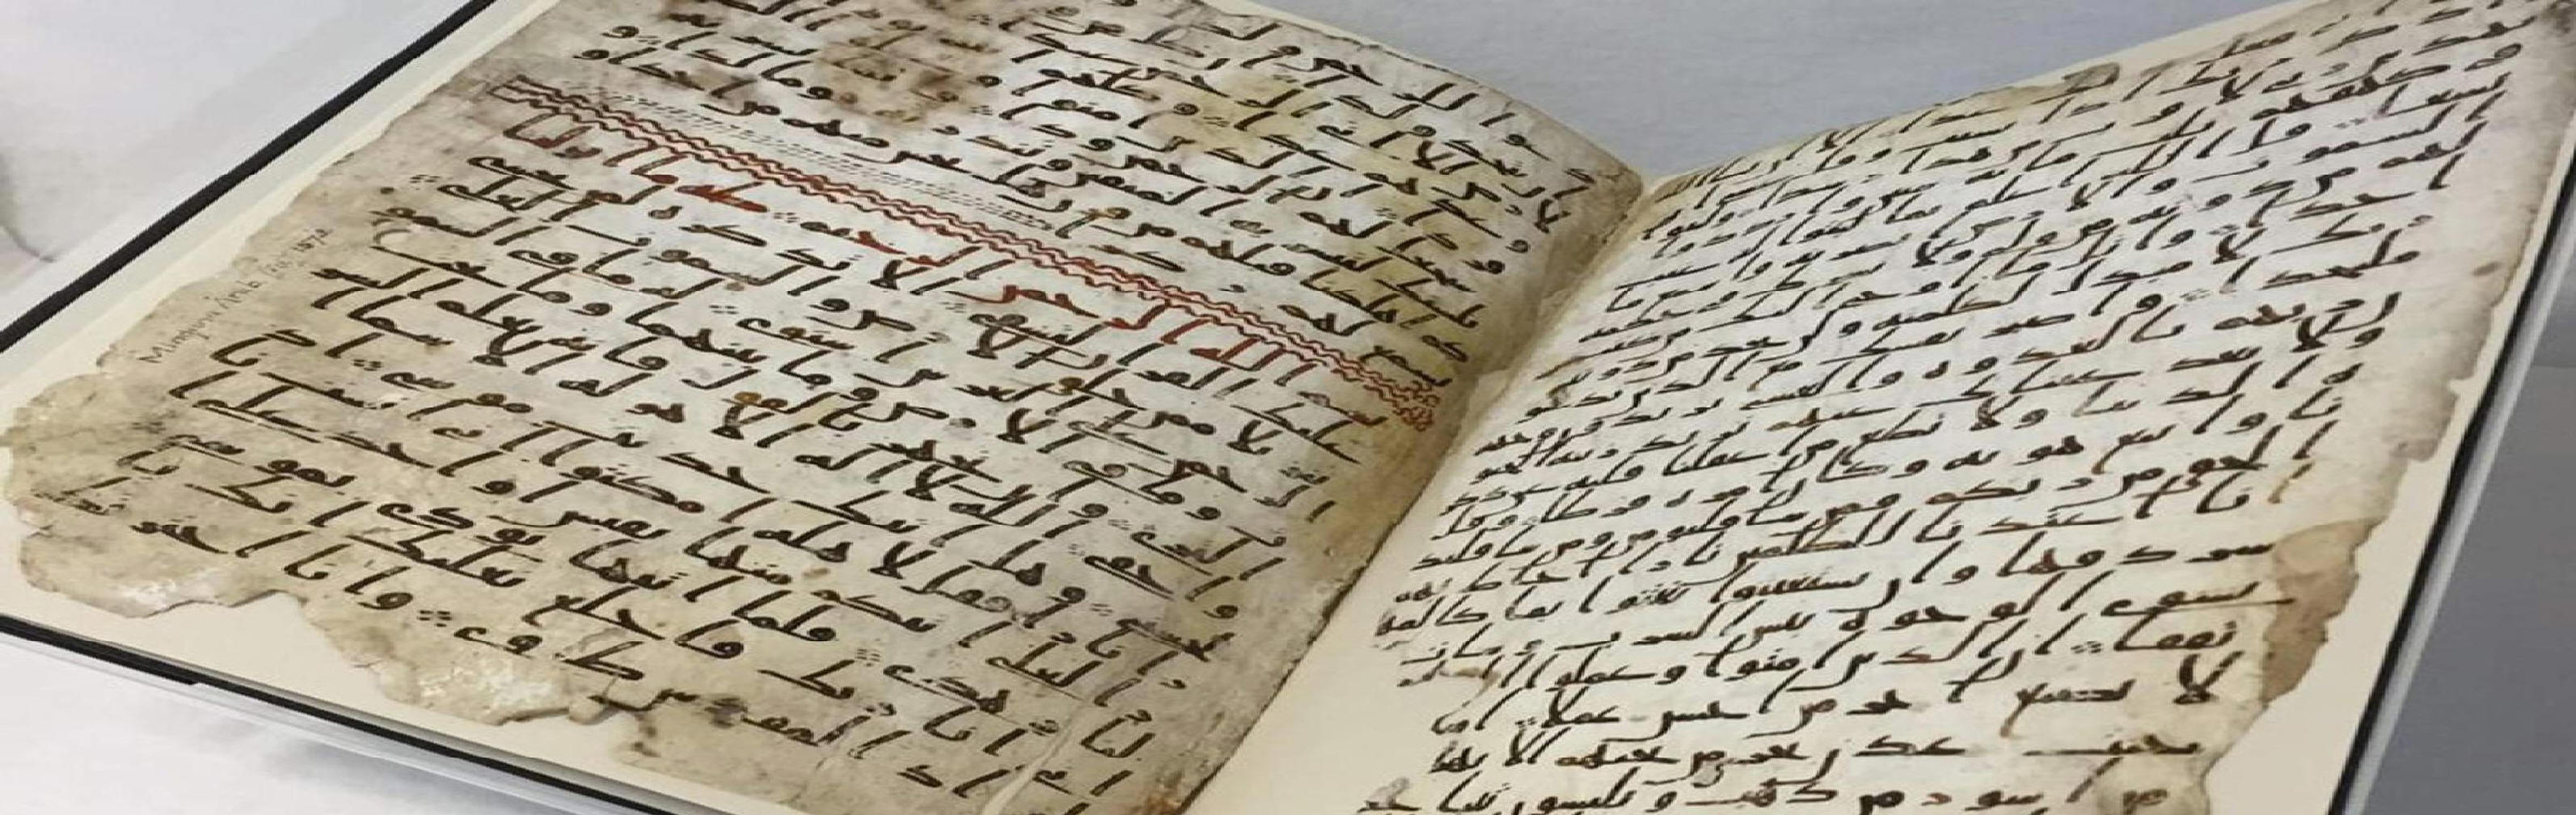 Found oldest quran 'Oldest' Qur'an